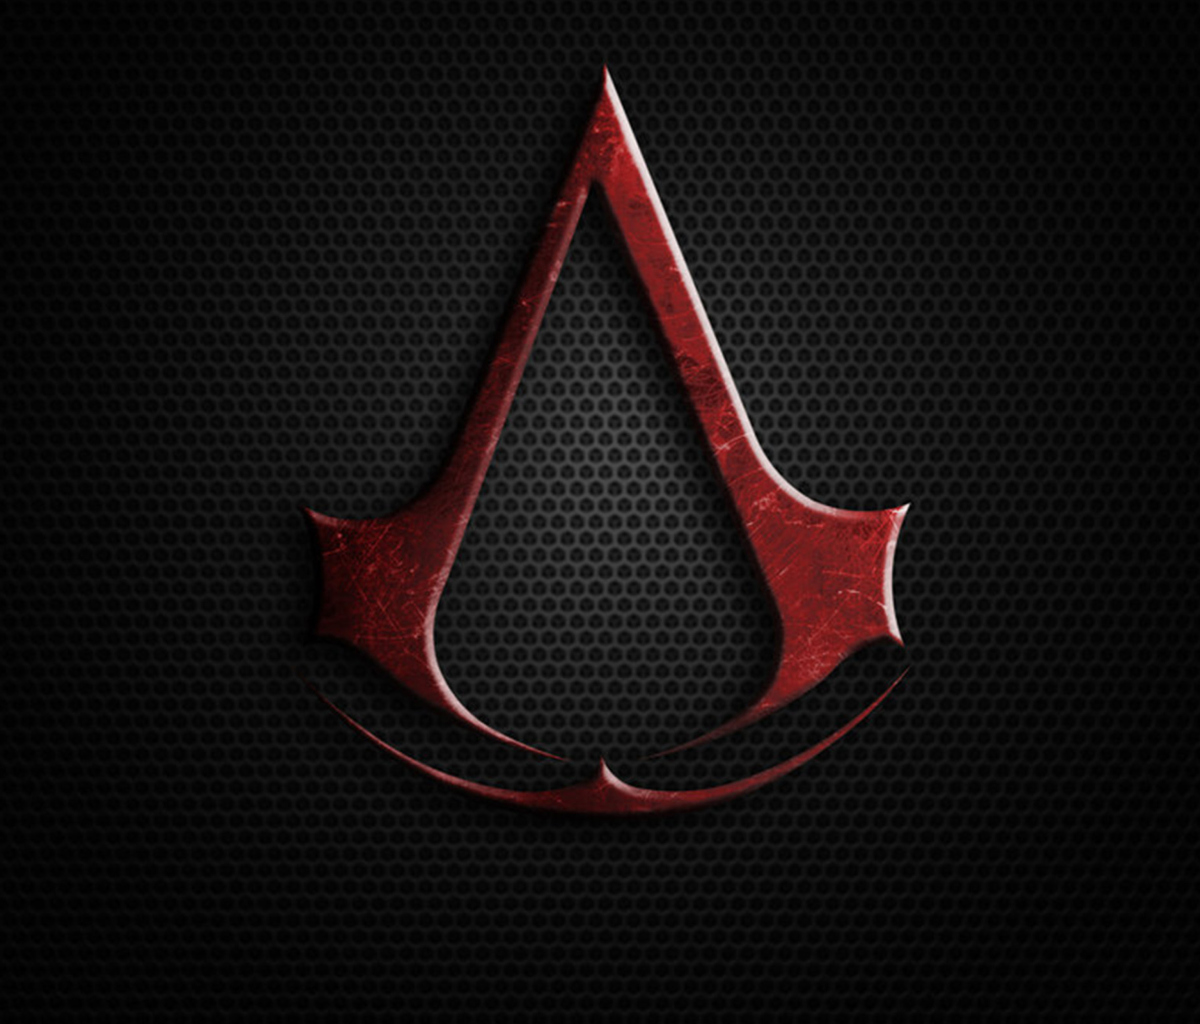 Fondo de pantalla Assassins Creed 1200x1024